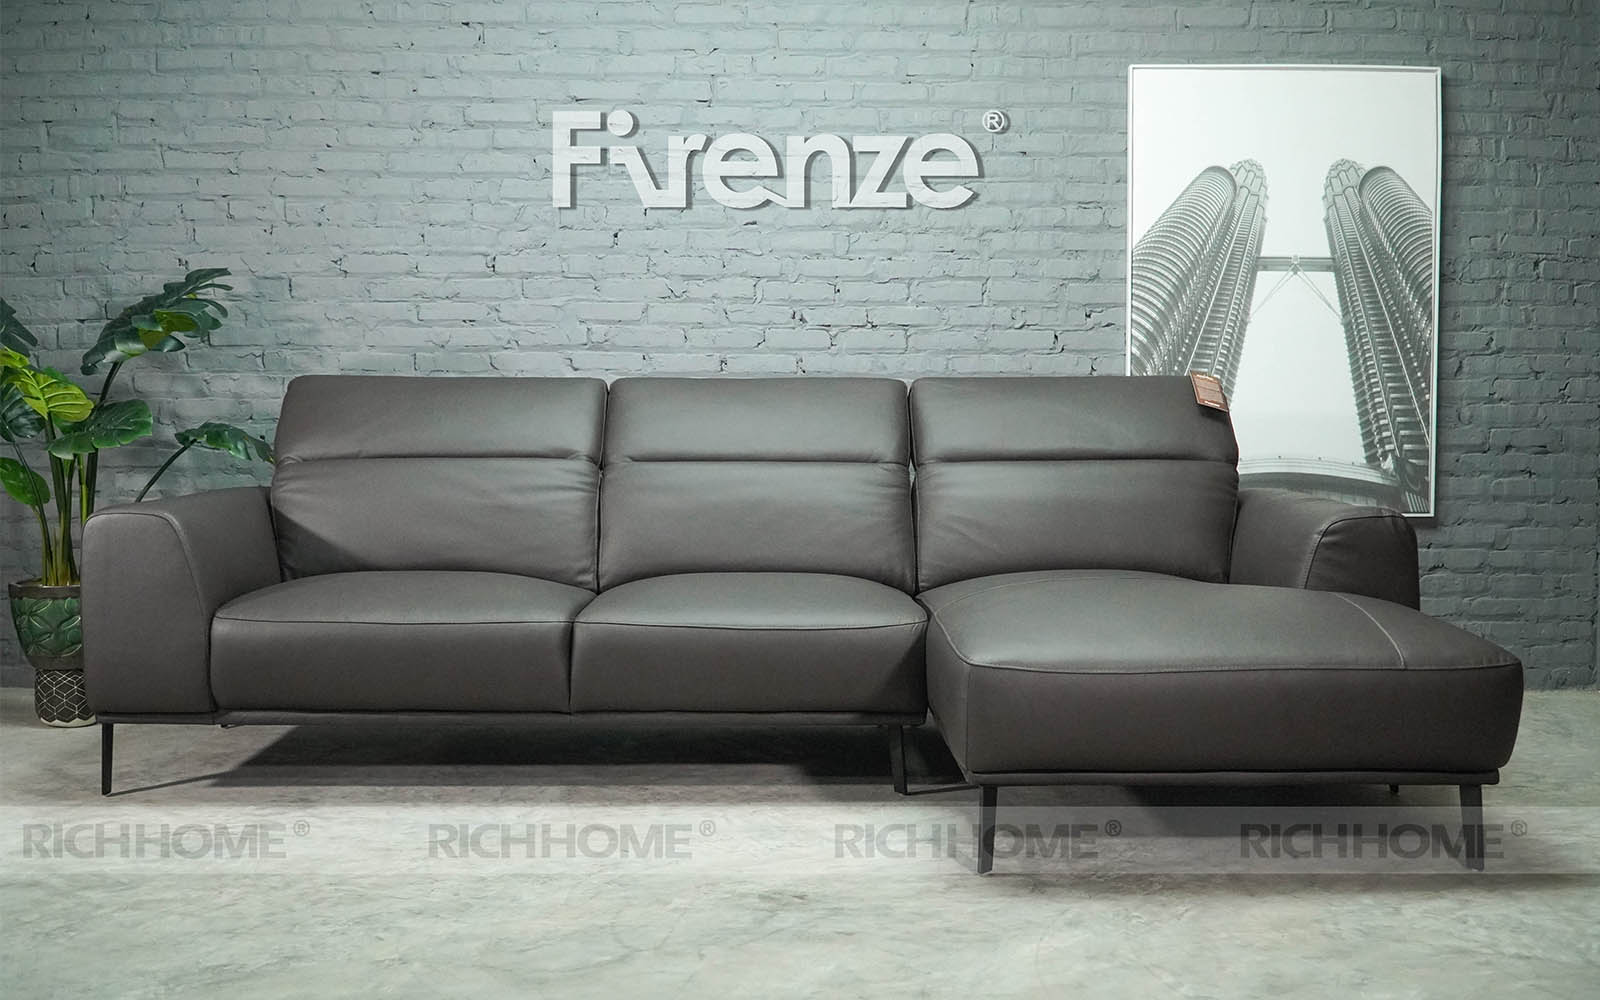 Tổng hợp các mẫu sofa cho căn hộ nhỏ diện tích 25m2 - Ảnh 9